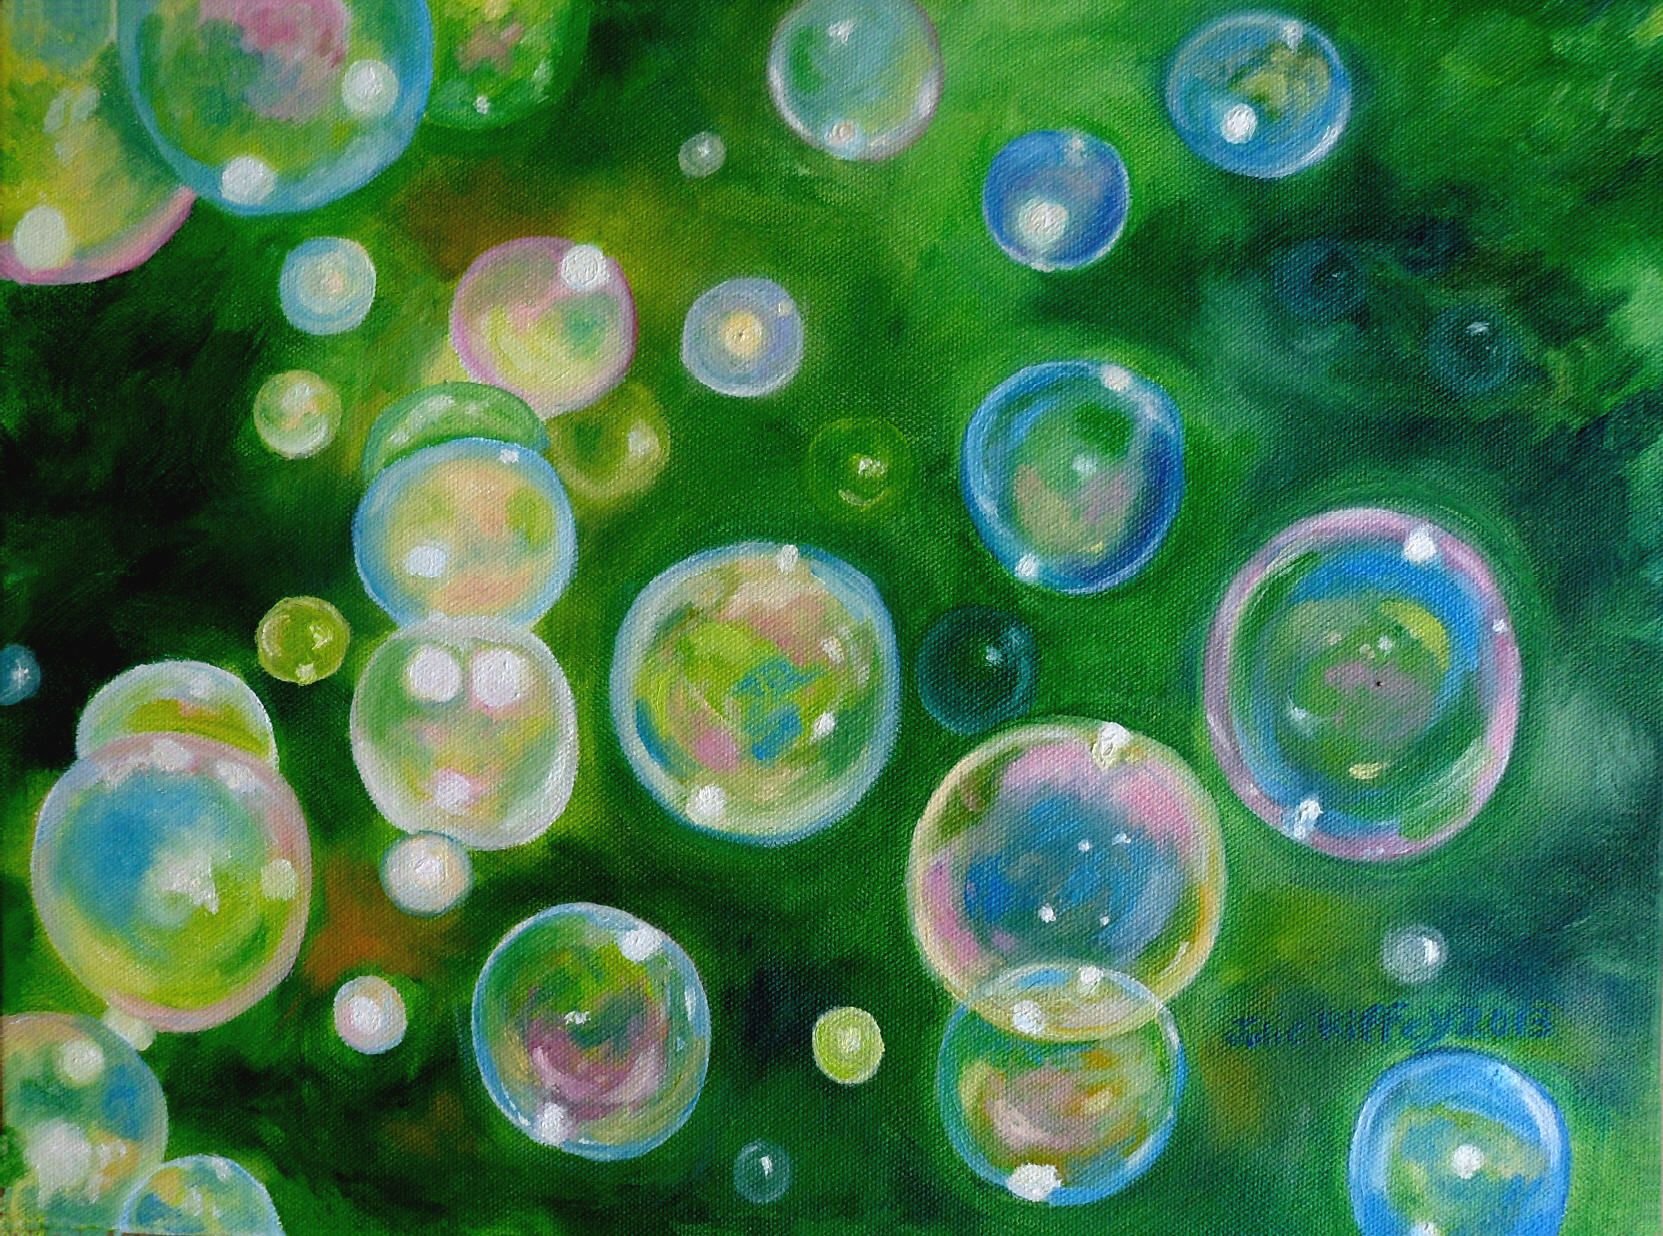 Пузырьки в масле. Мыльные пузыри. Цветные мыльные пузыри. Рисование мыльными пузырями. Мыльные пузыри в живописи.